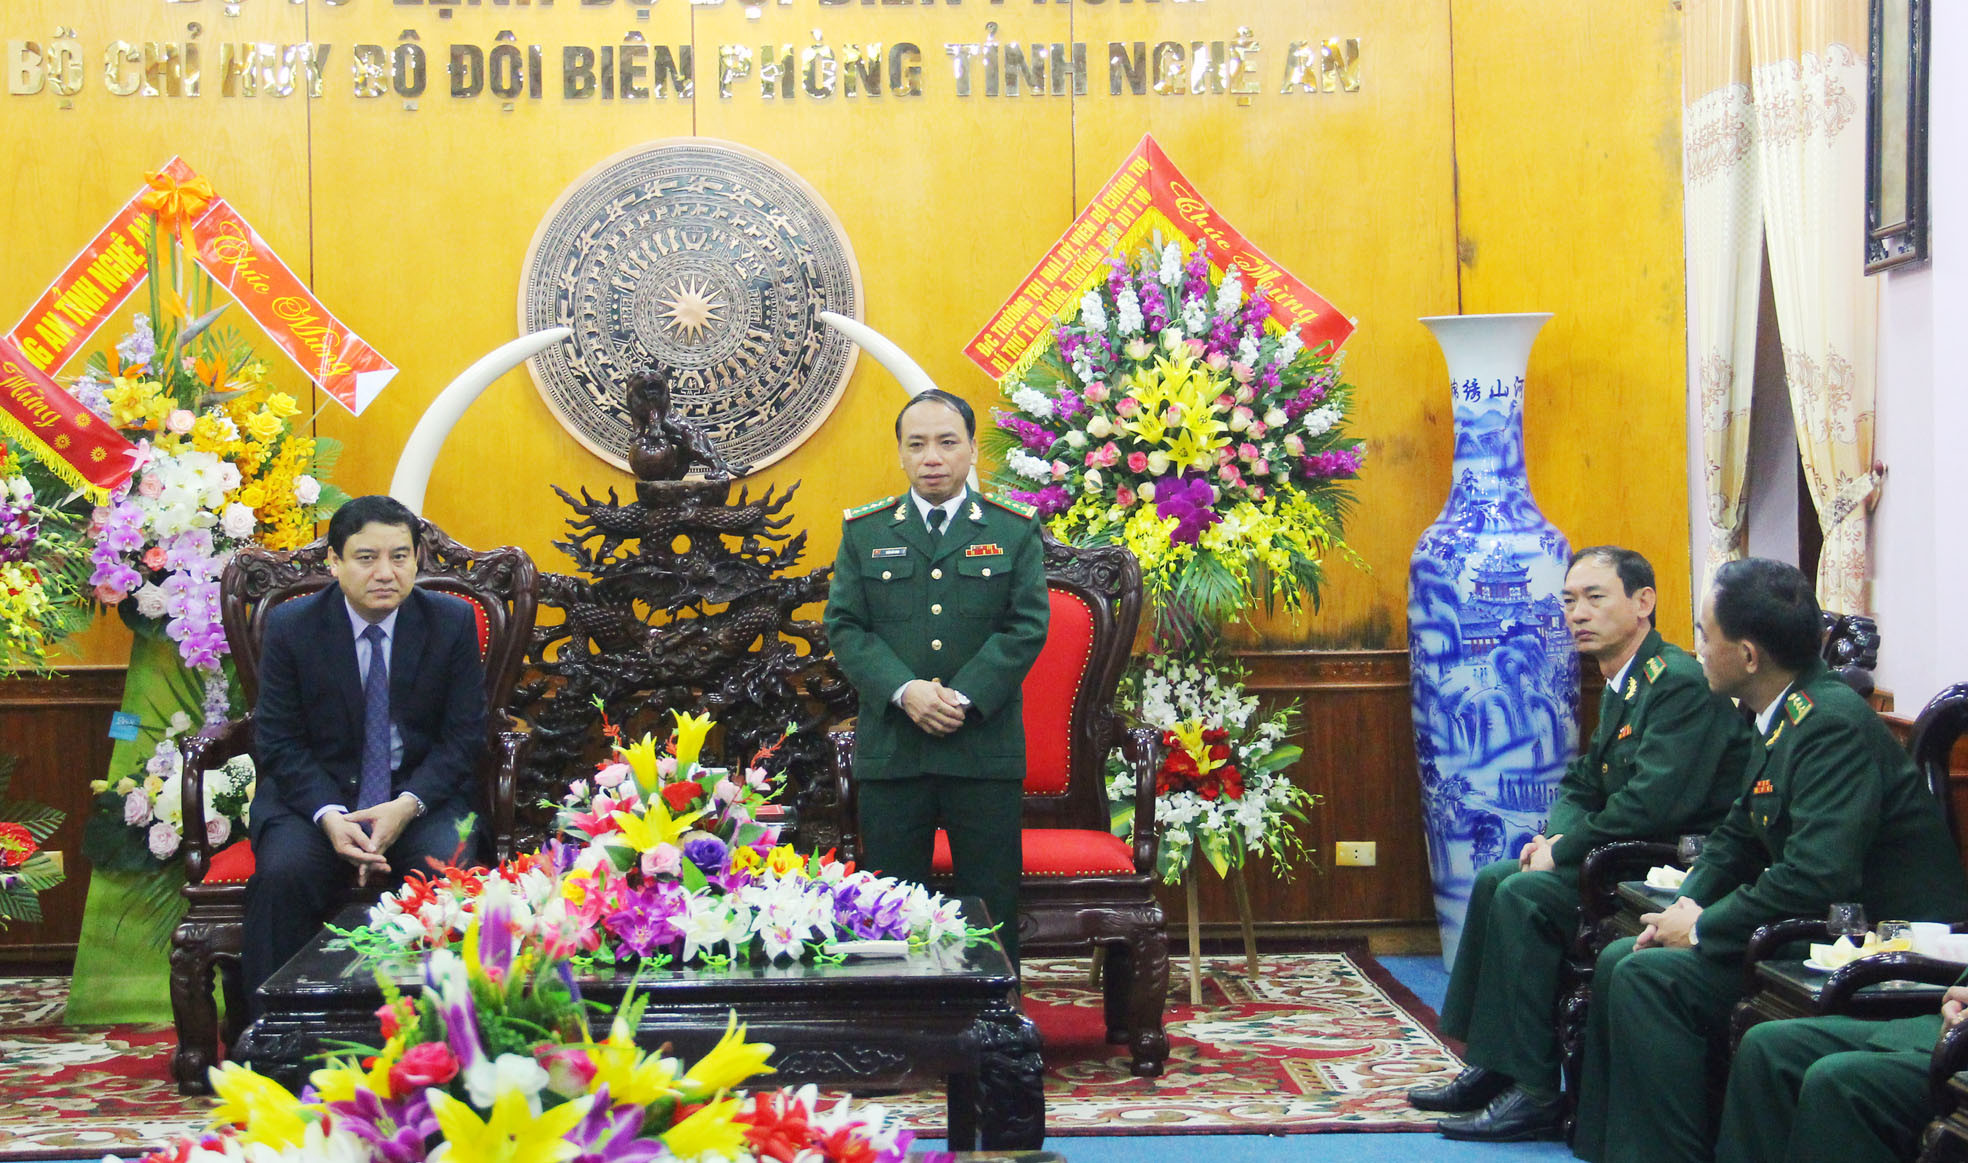 Đại tá Trần Hải Bình - Chỉ huy trưởng Bộ Chỉ huy BĐBP tỉnh Nghệ An báo cáo với đoàn công tác. Ảnh: Thanh Quỳnh